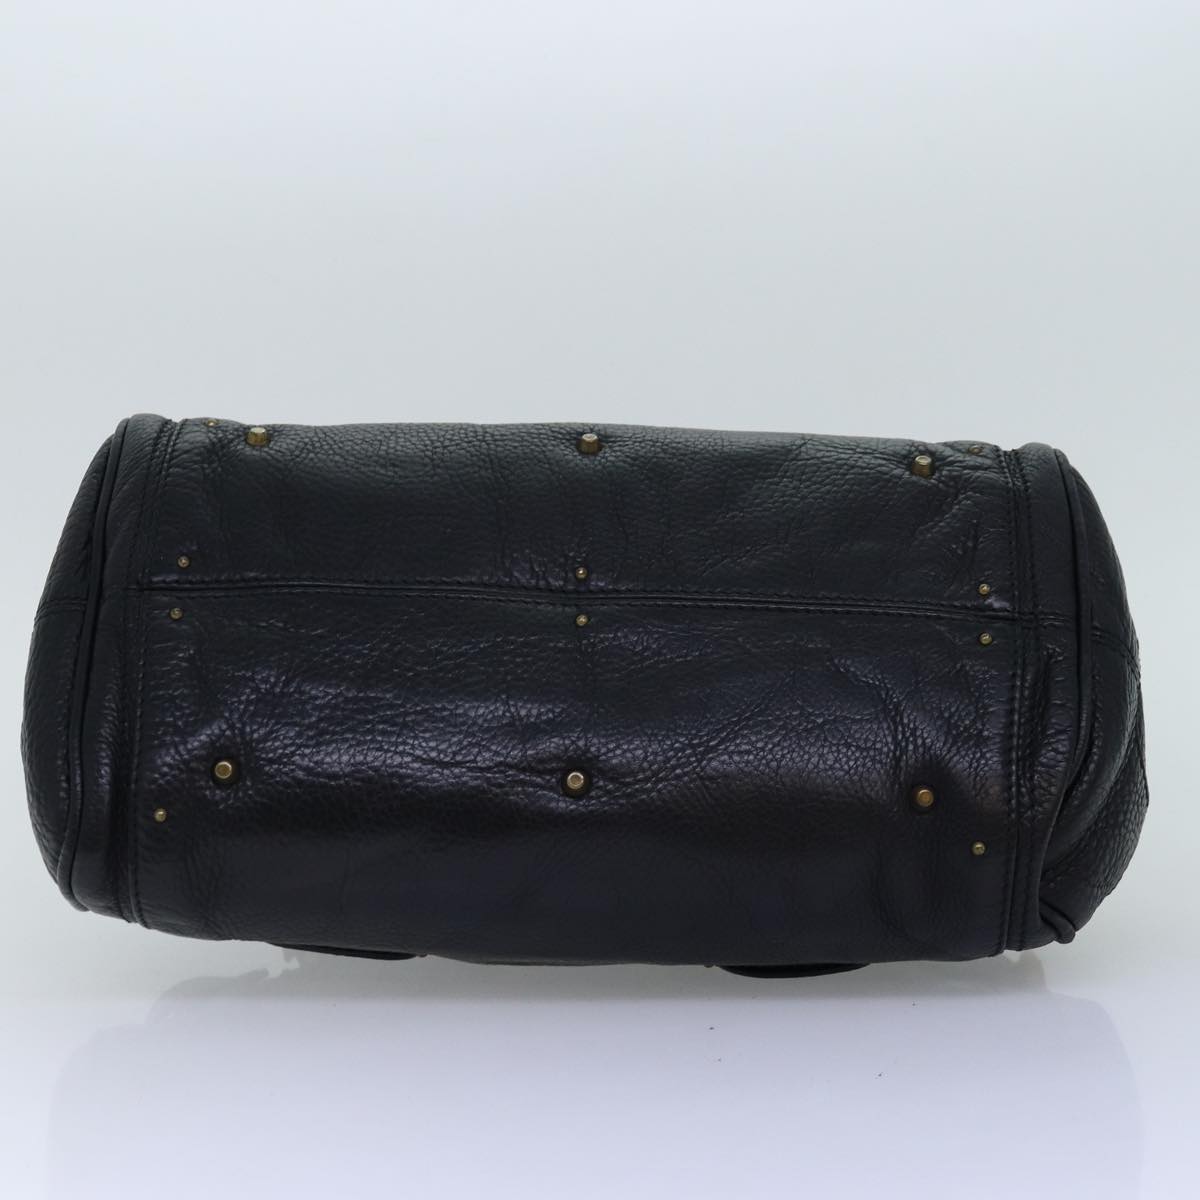 Chloe Paddington Hand Bag Leather Black Auth am6266